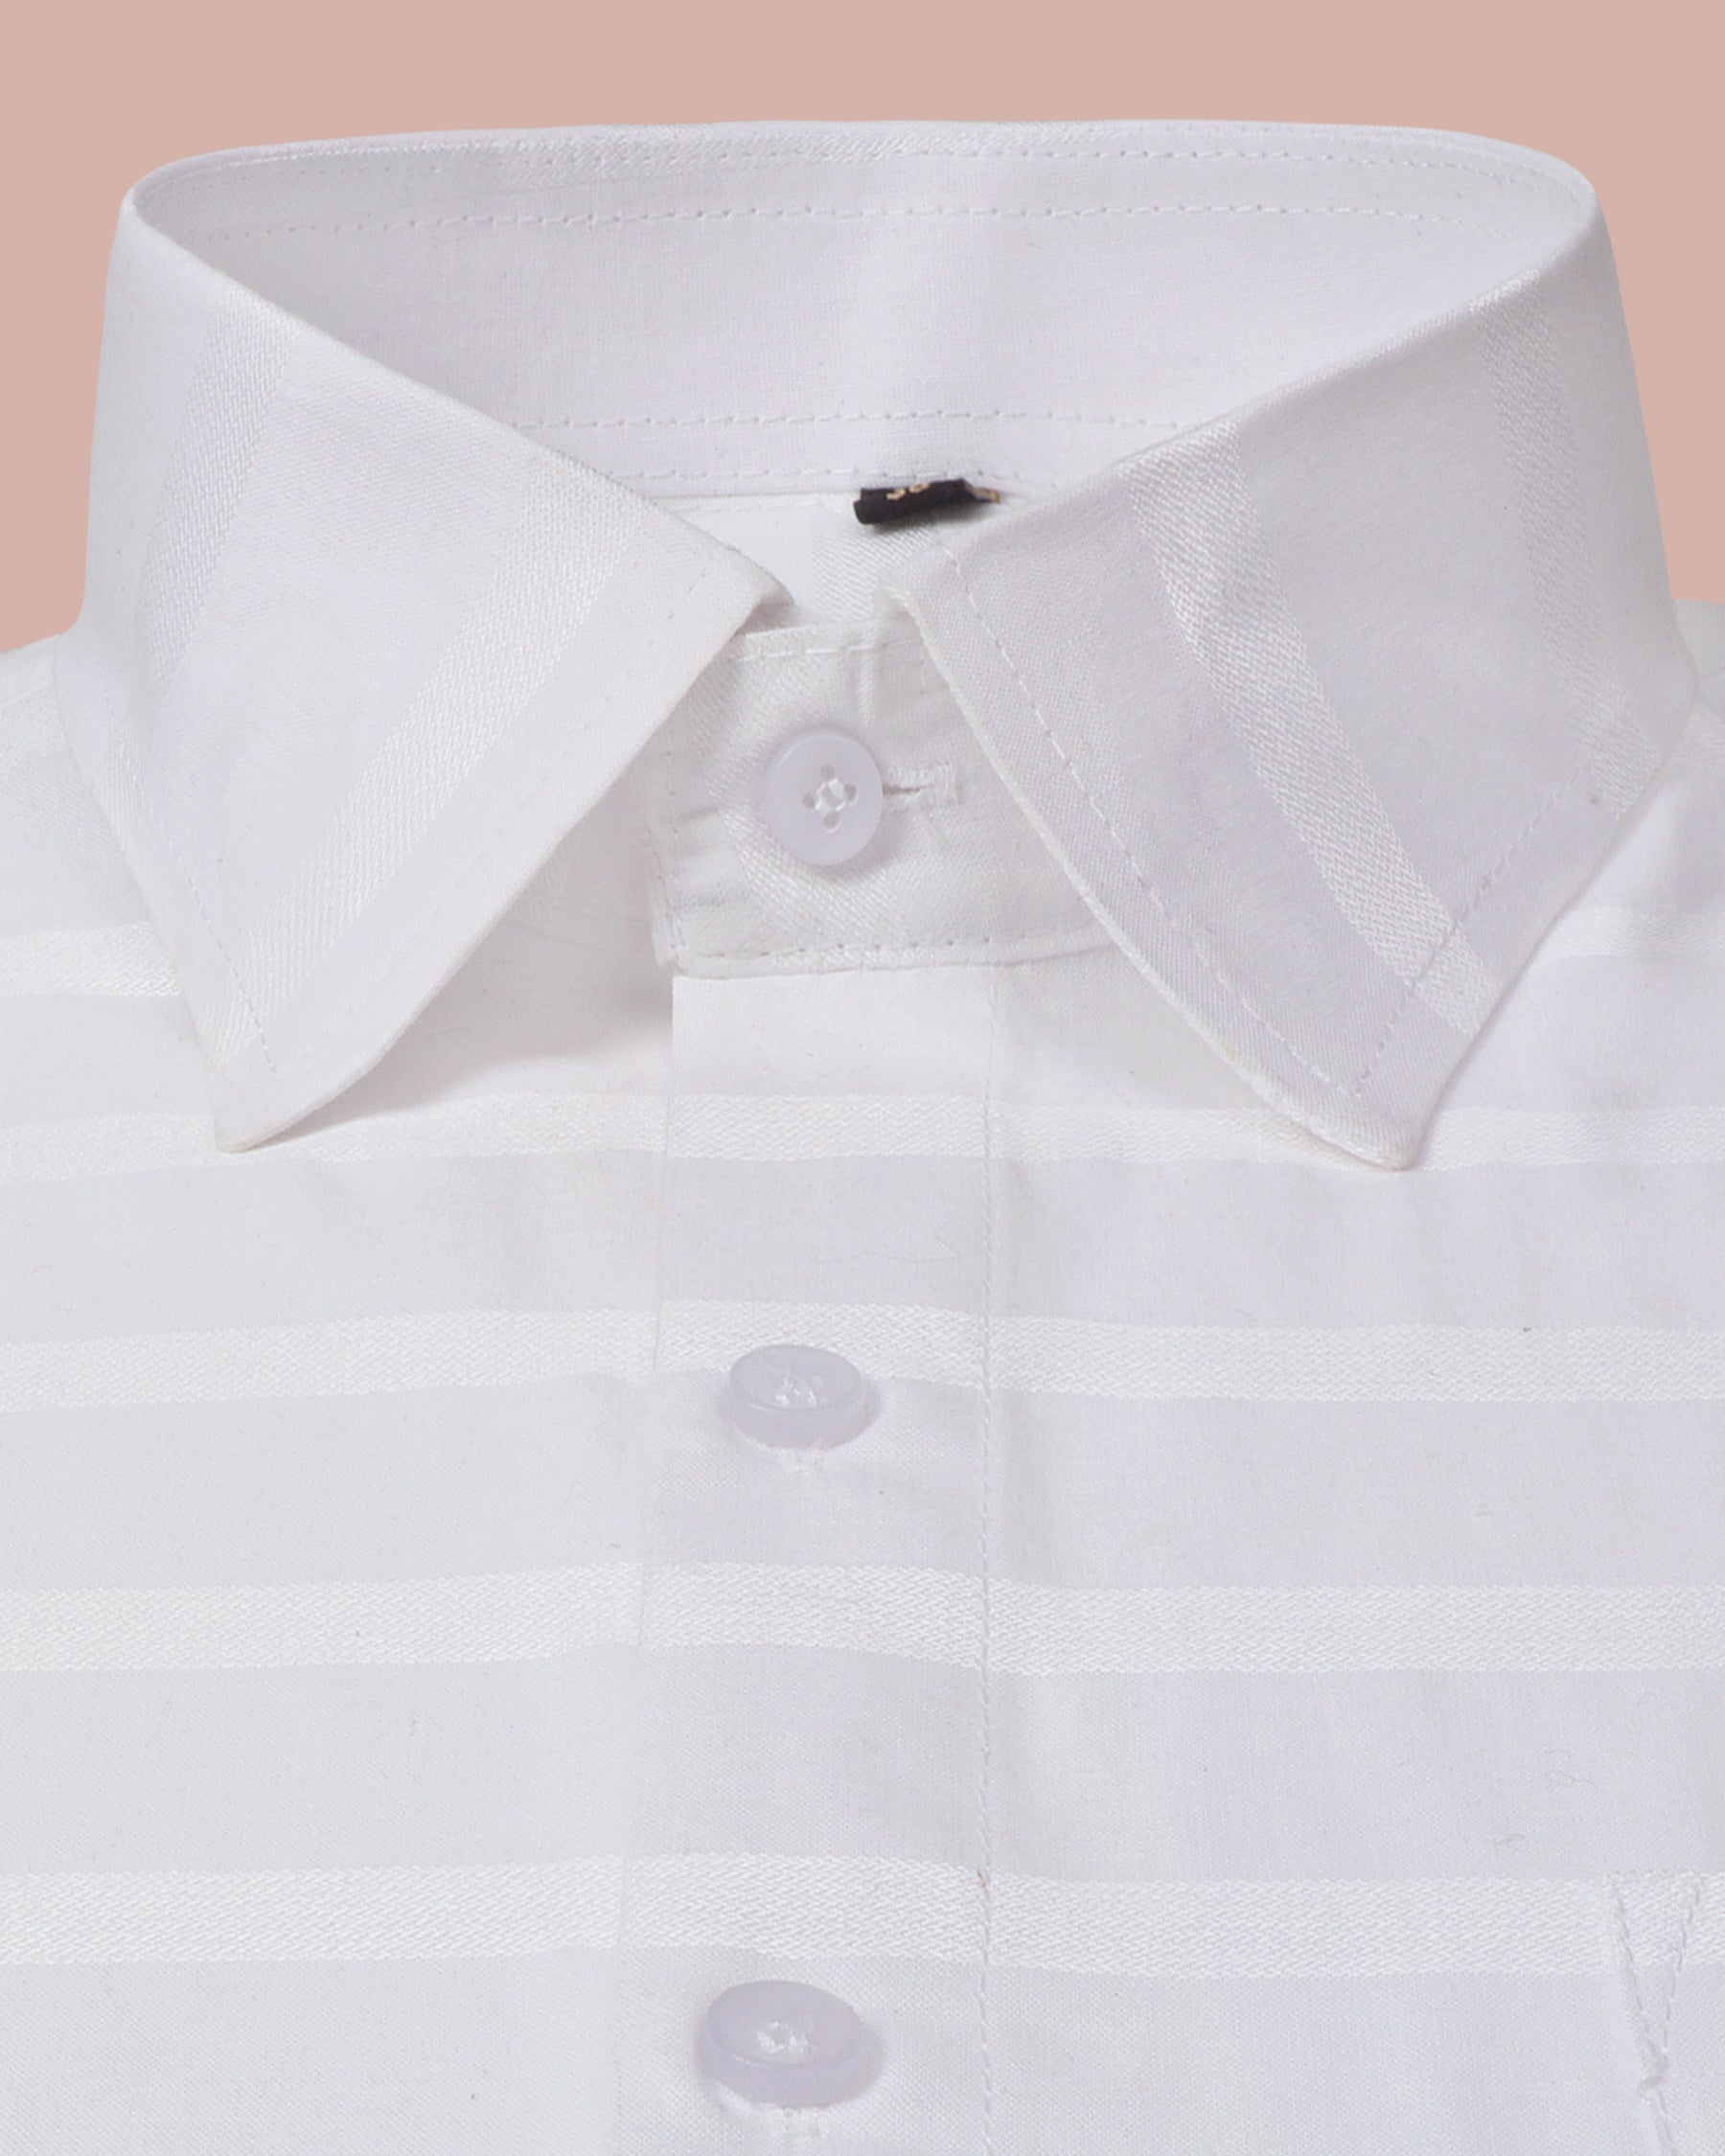 Tony White Jacquard Pattern Mens Shirts